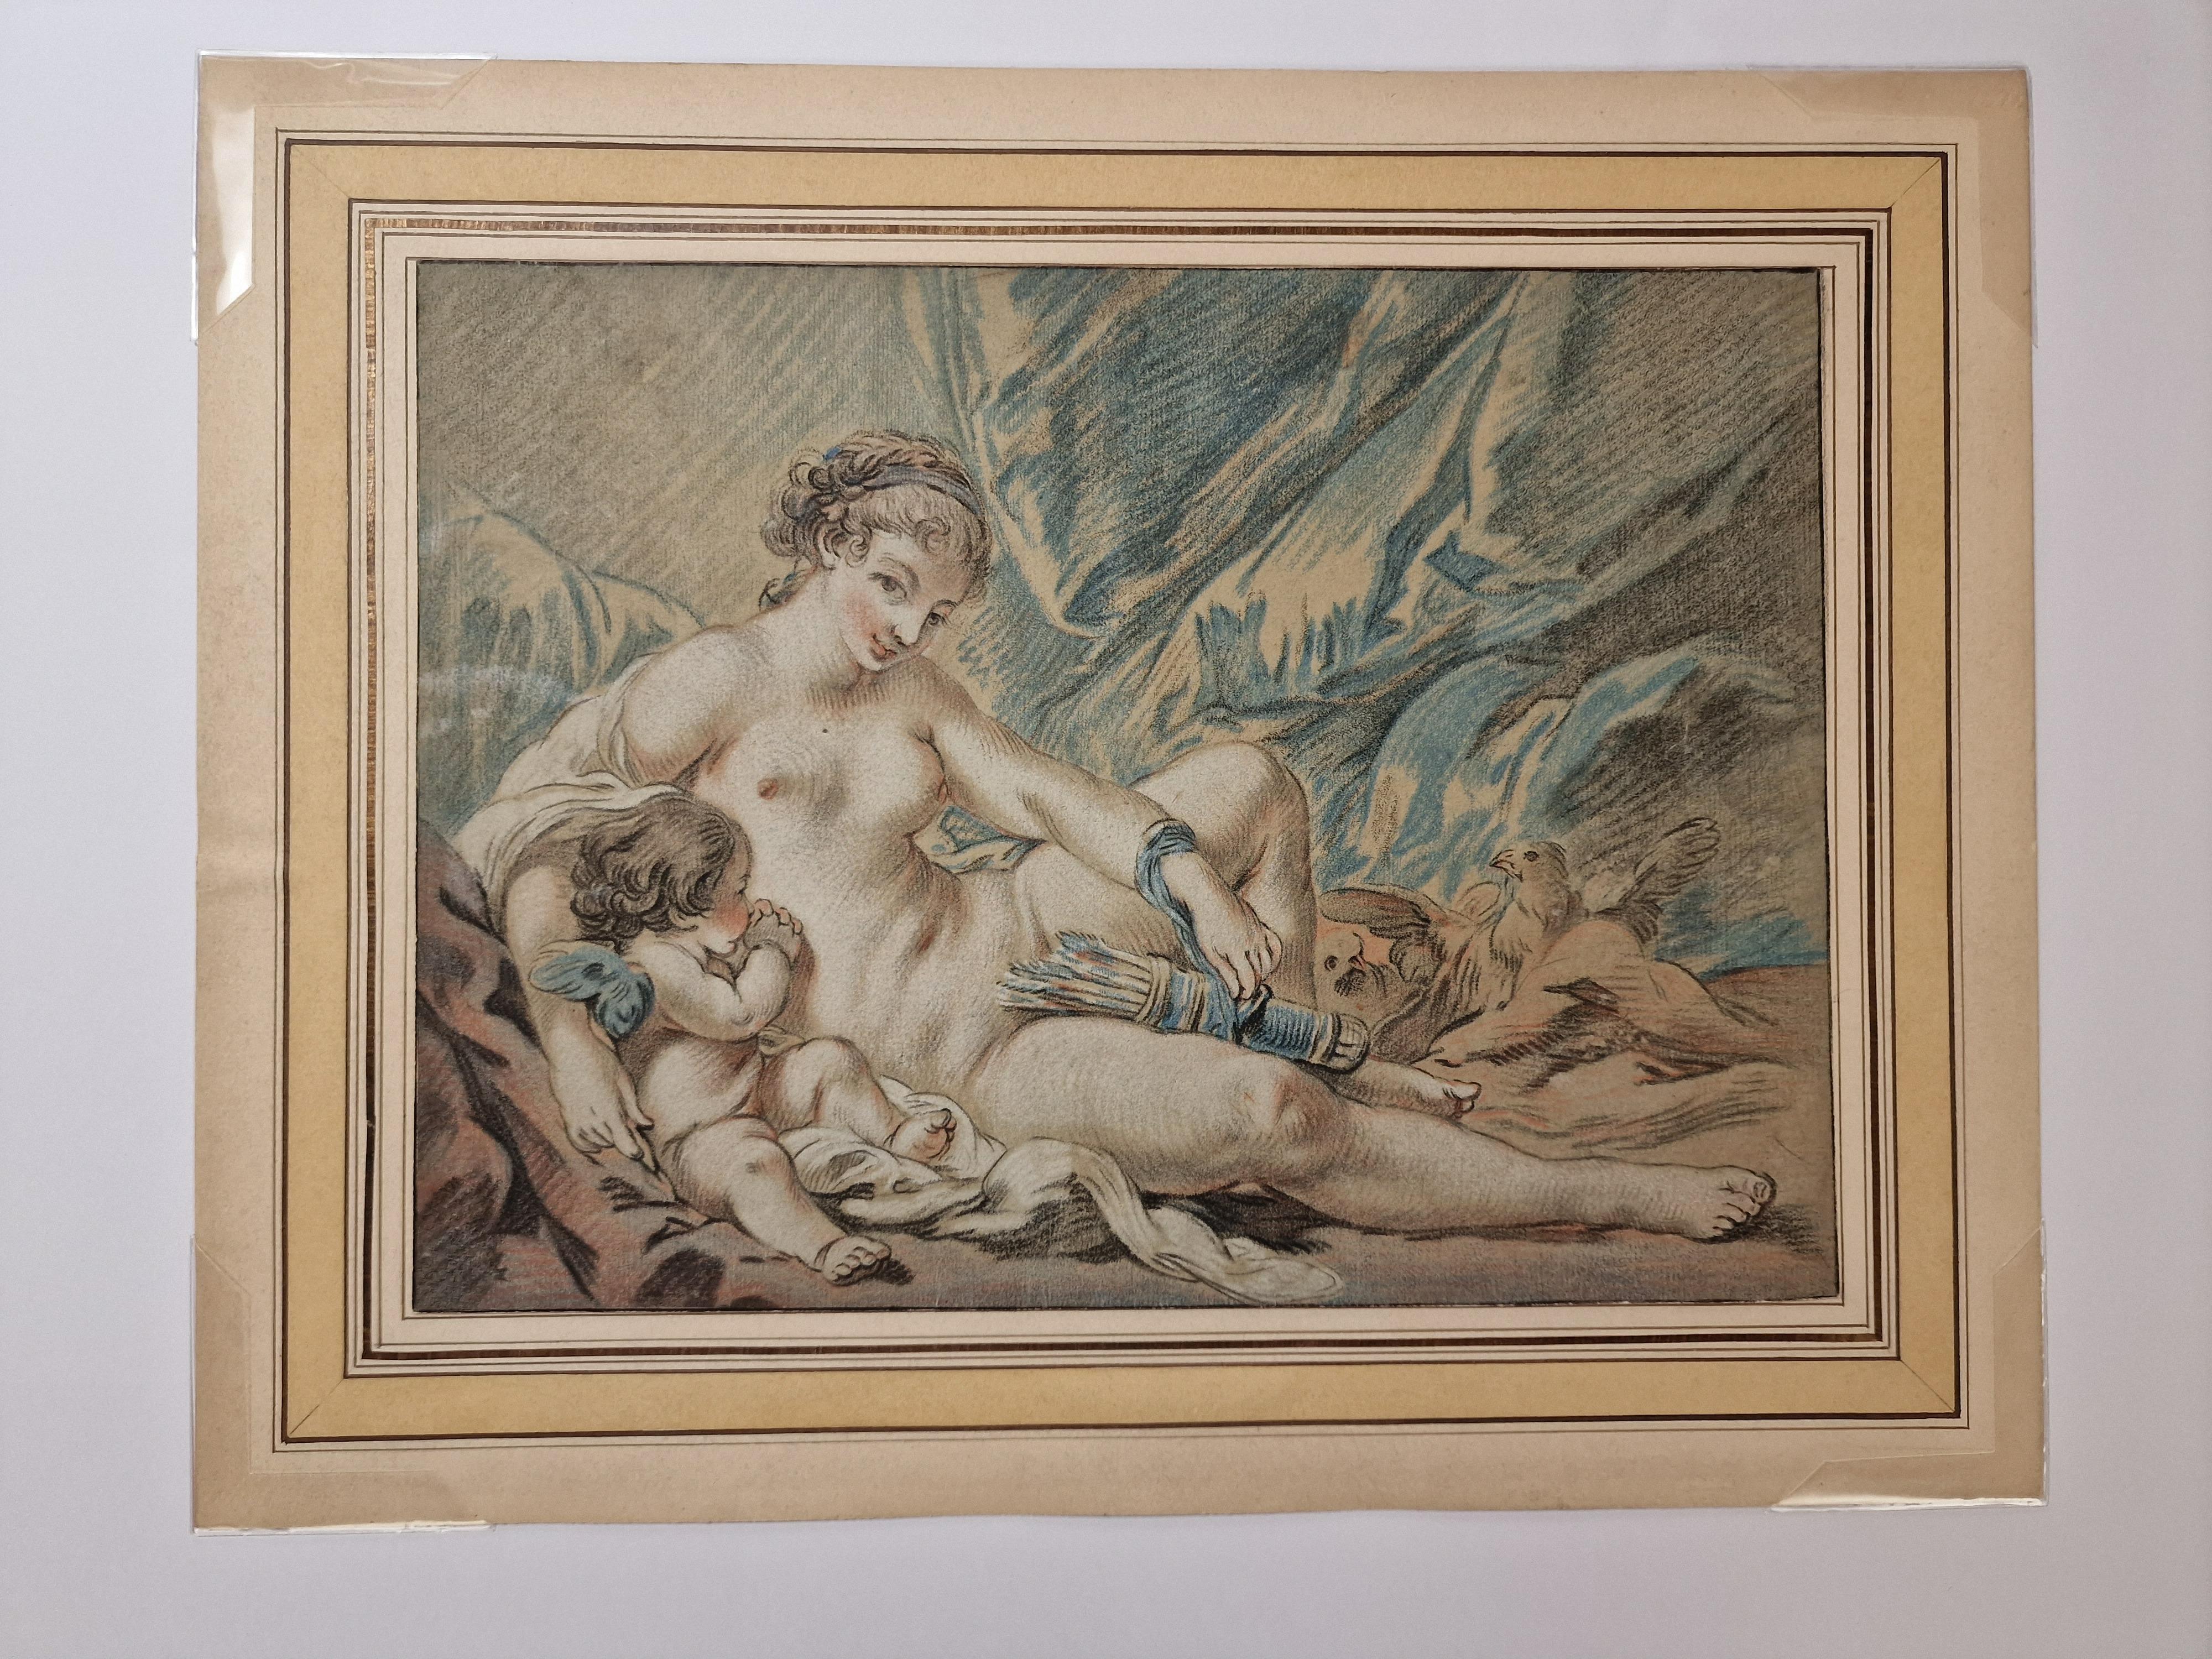 L'amour prie Vénus de lui rendre ses armes - Print by Louis Marin Bonnet